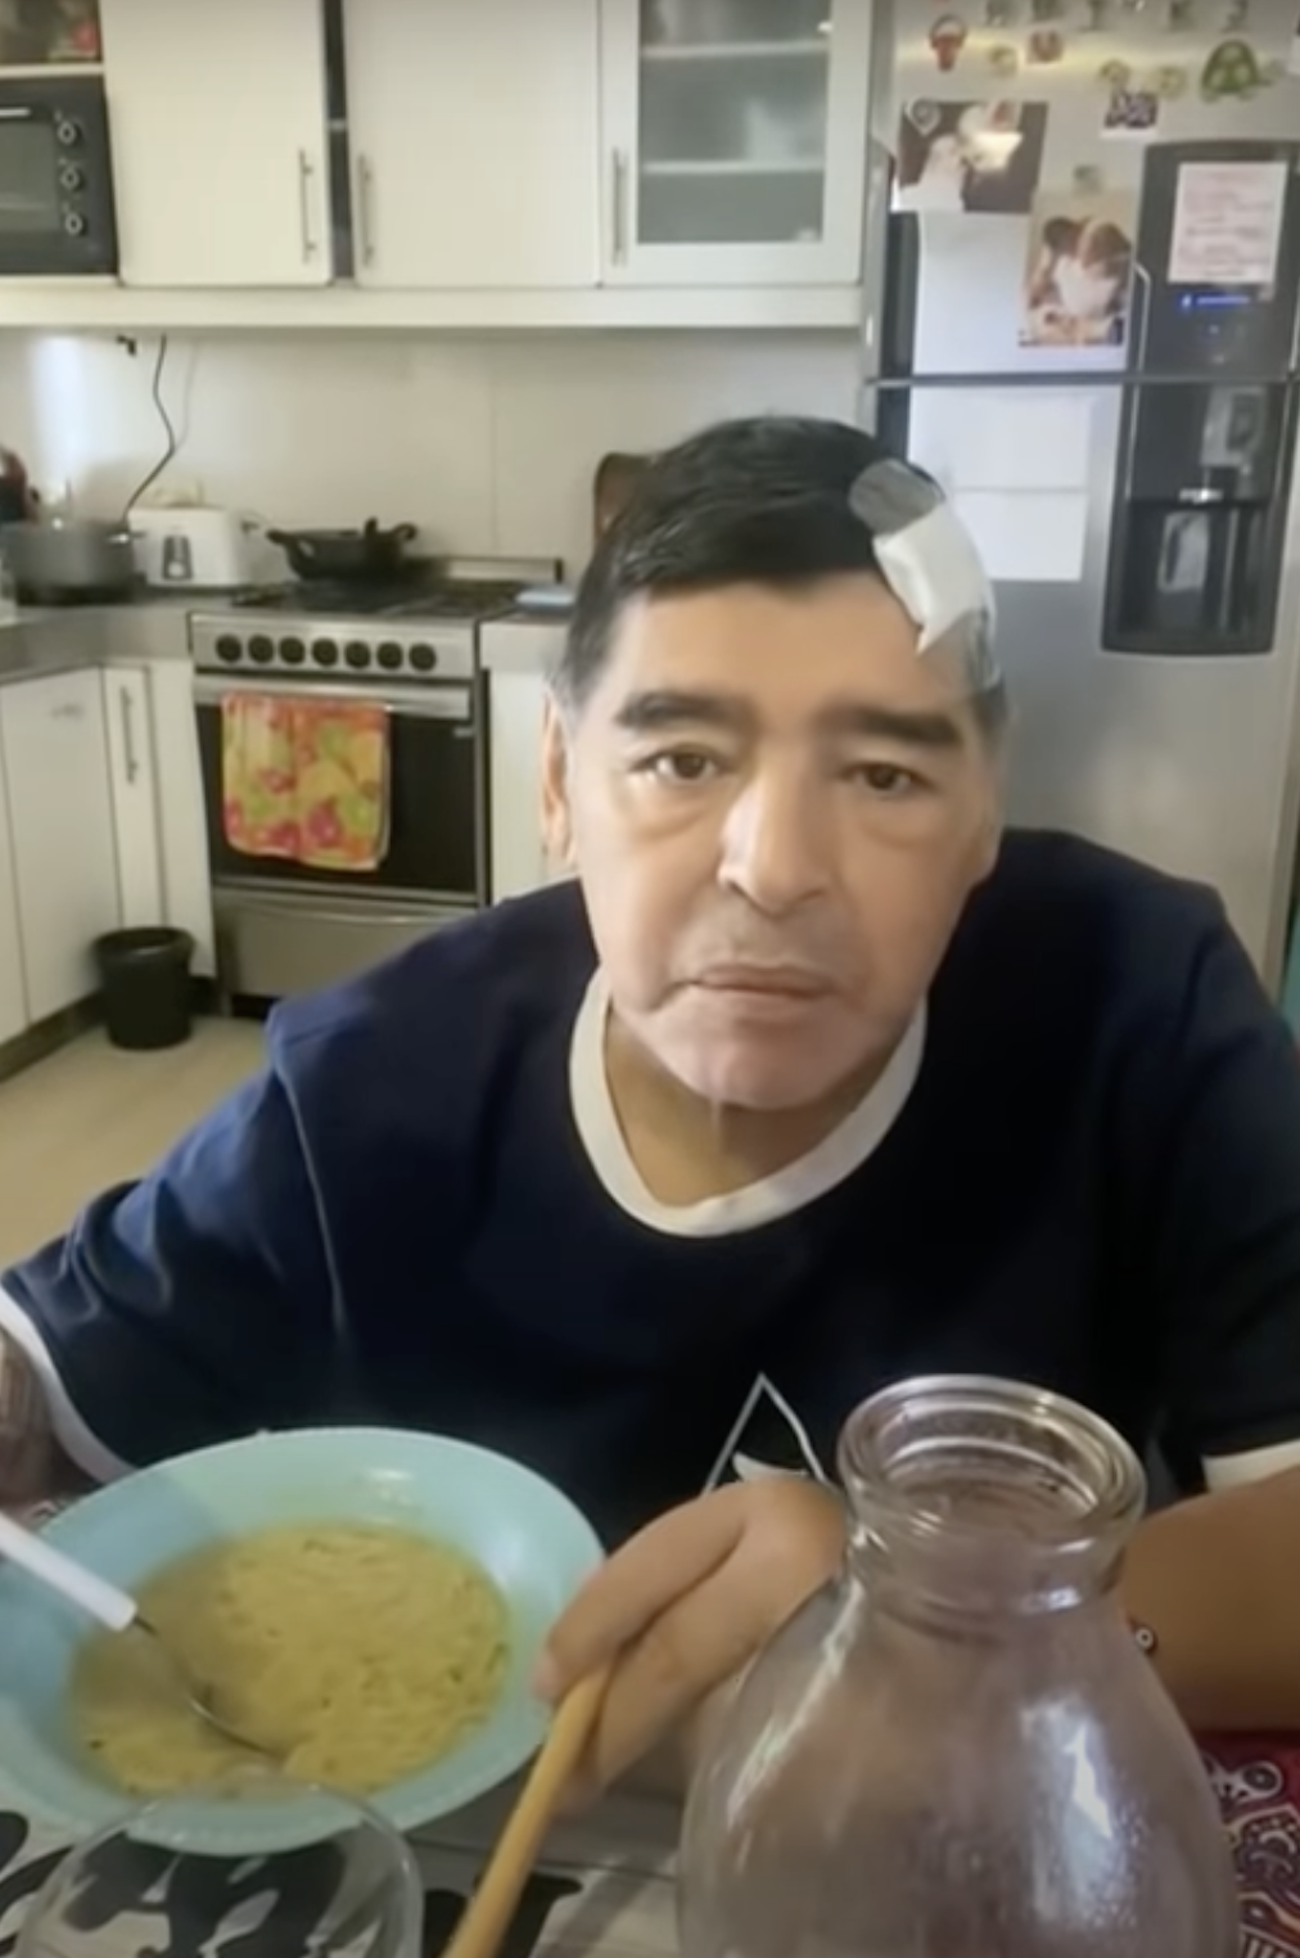 Surt a la llum l'últim vídeo de Maradona abans de morir: "Estic baldat"